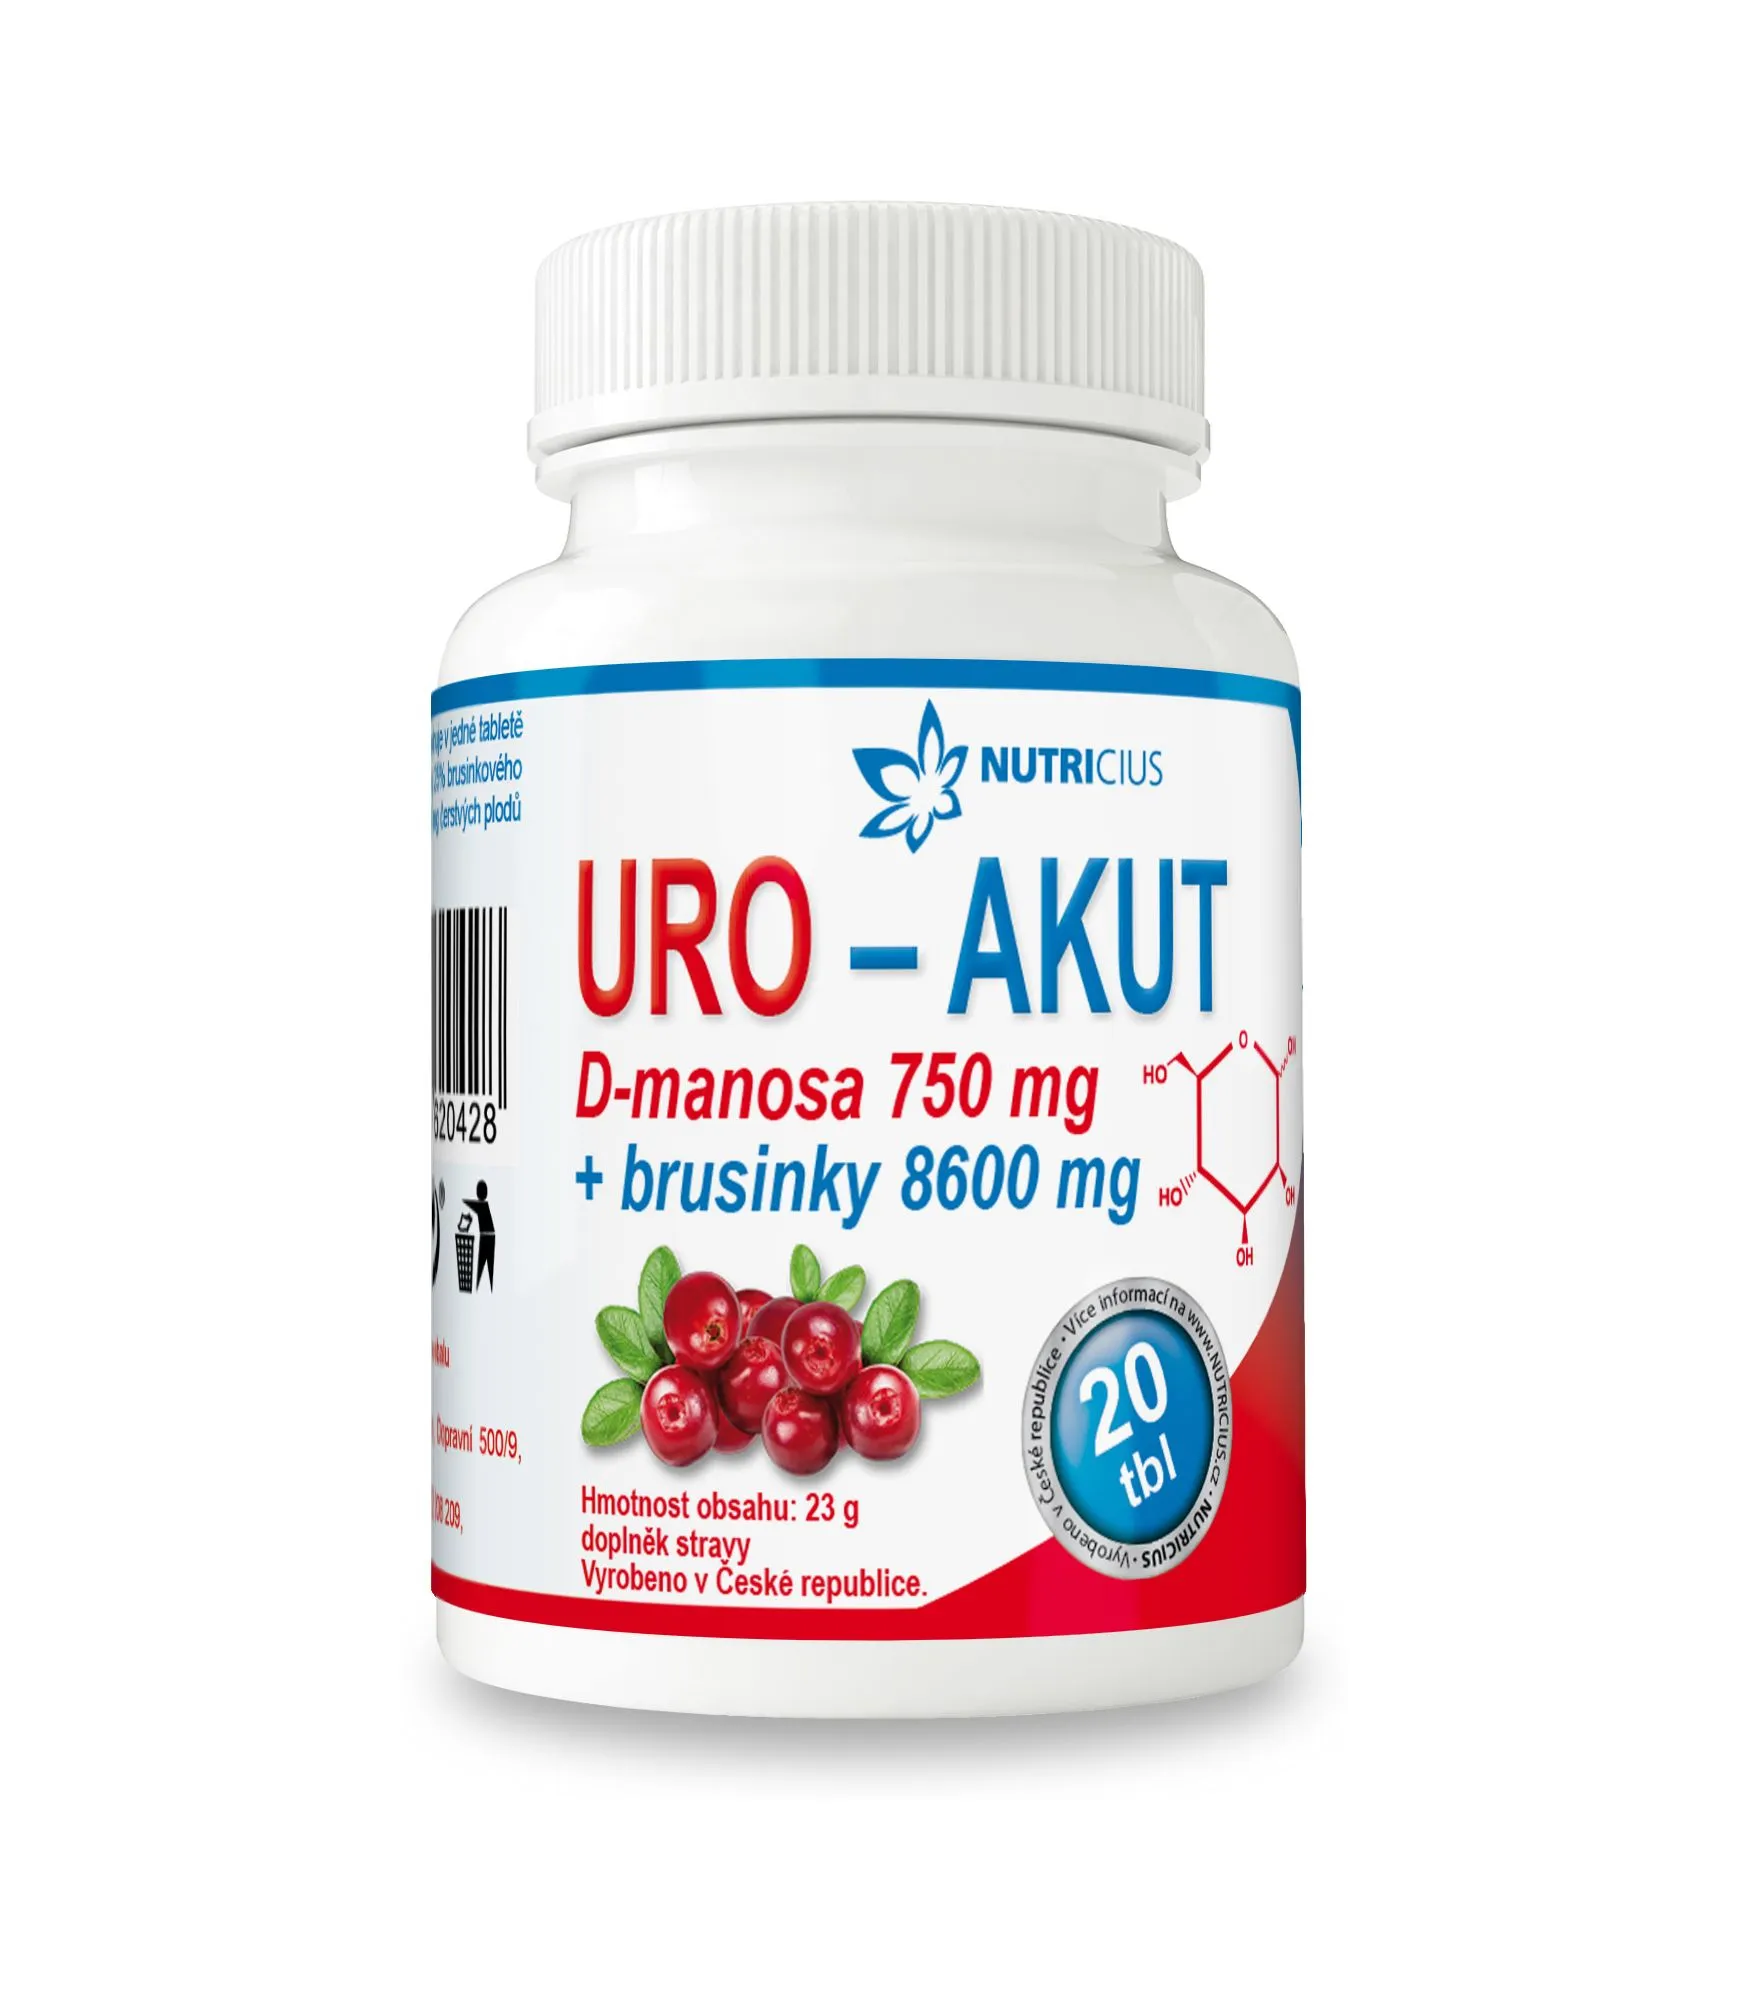 Nutricius URO-AKUT Manosa 750 mg + Brusinky 8600 mg